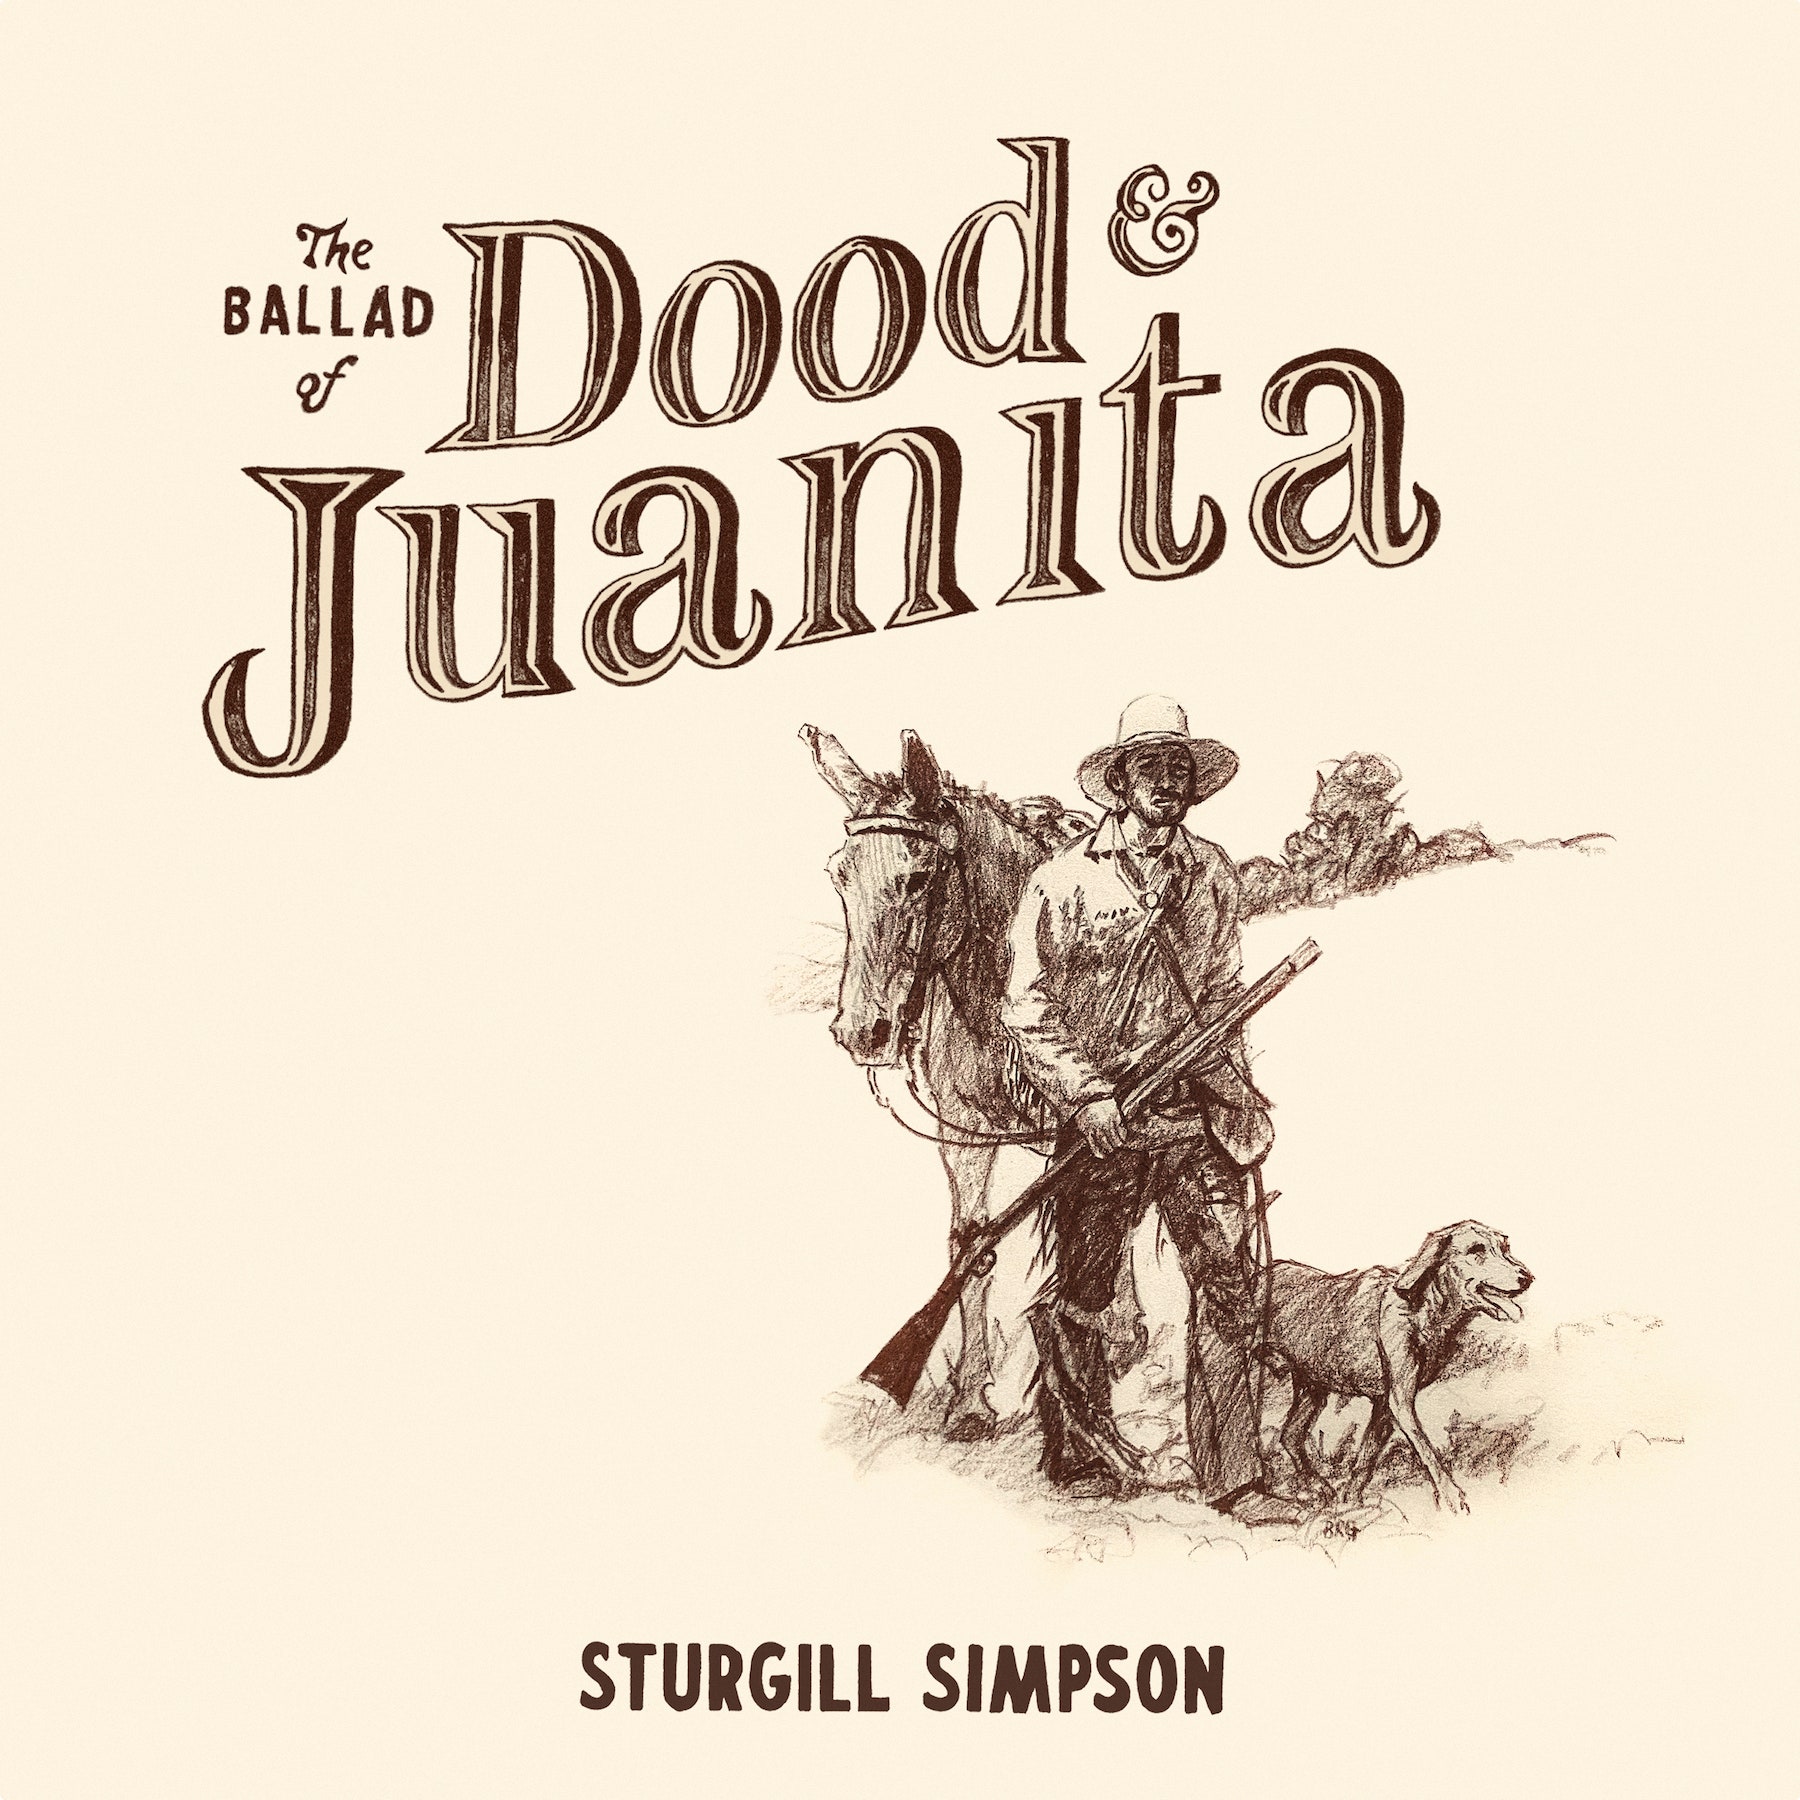 Sturgill Simpson Dood and Juanita